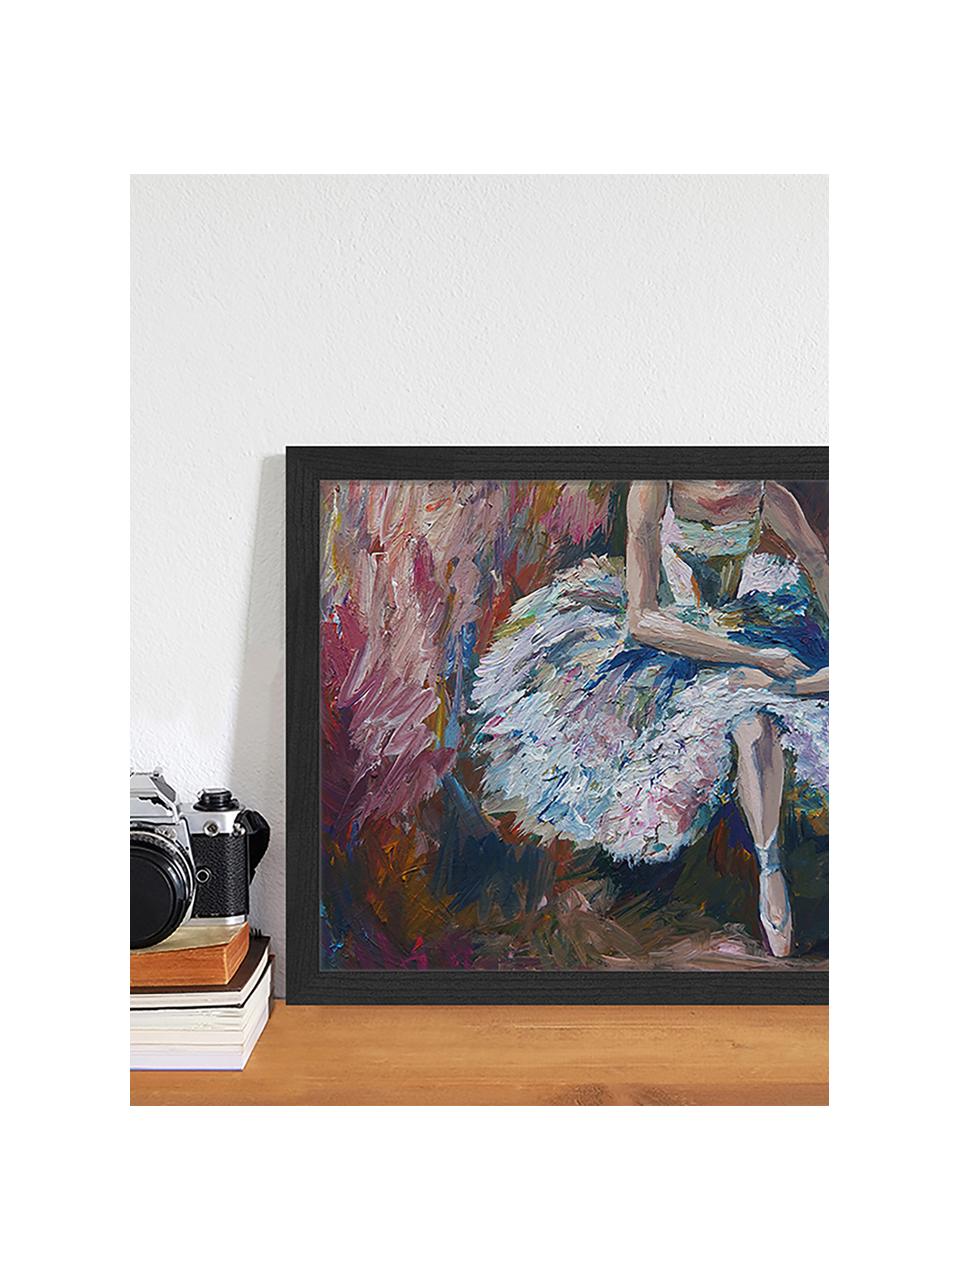 Zarámovaný digitální tisk Ballerina Painting, Více barev